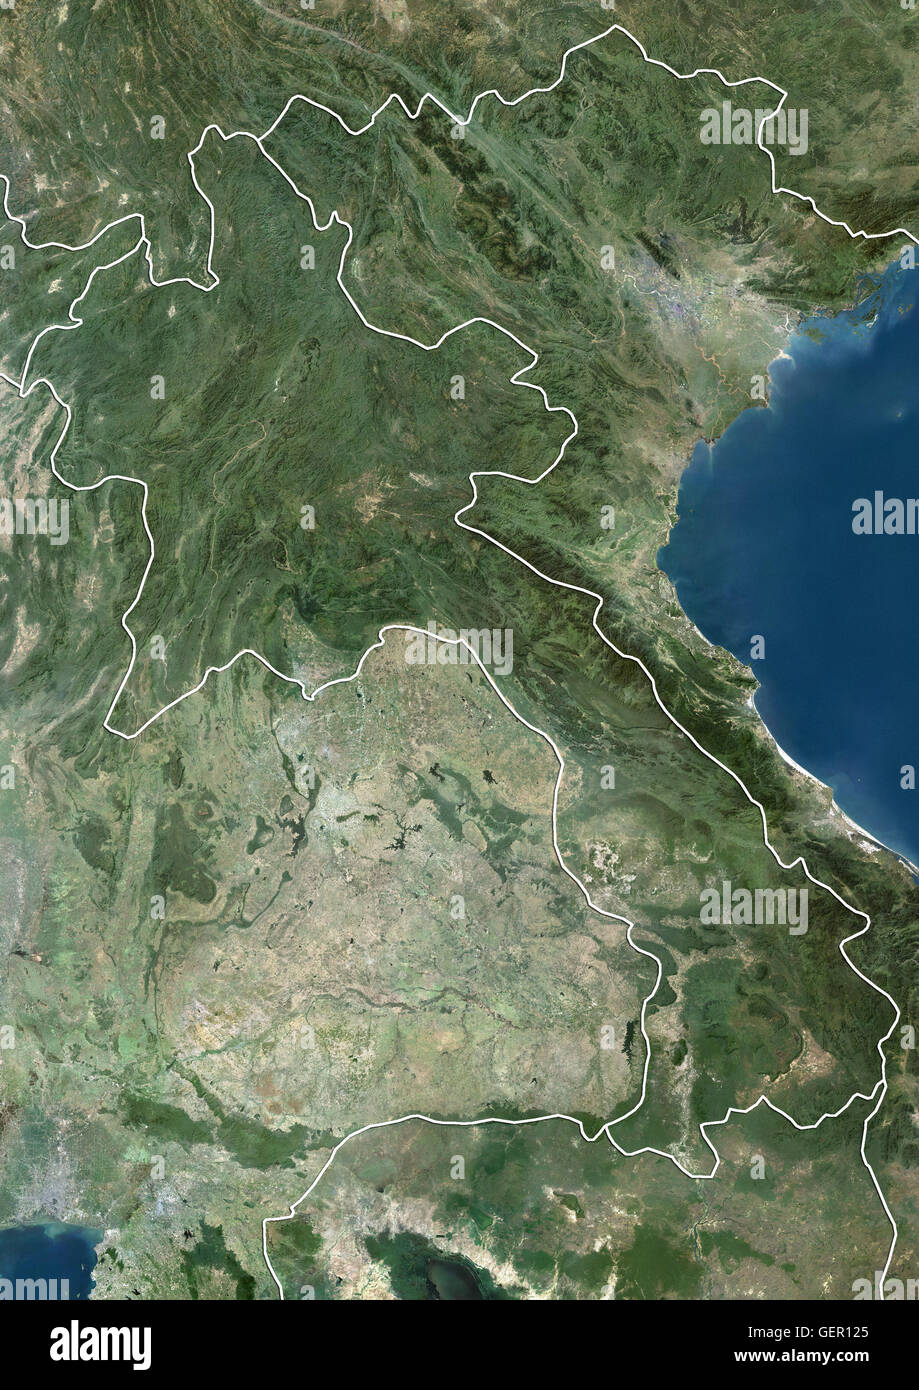 Satellitenansicht von Laos (mit Ländergrenzen). Dieses Bild wurde aus Daten von Landsat-Satelliten erworben erstellt. Stockfoto